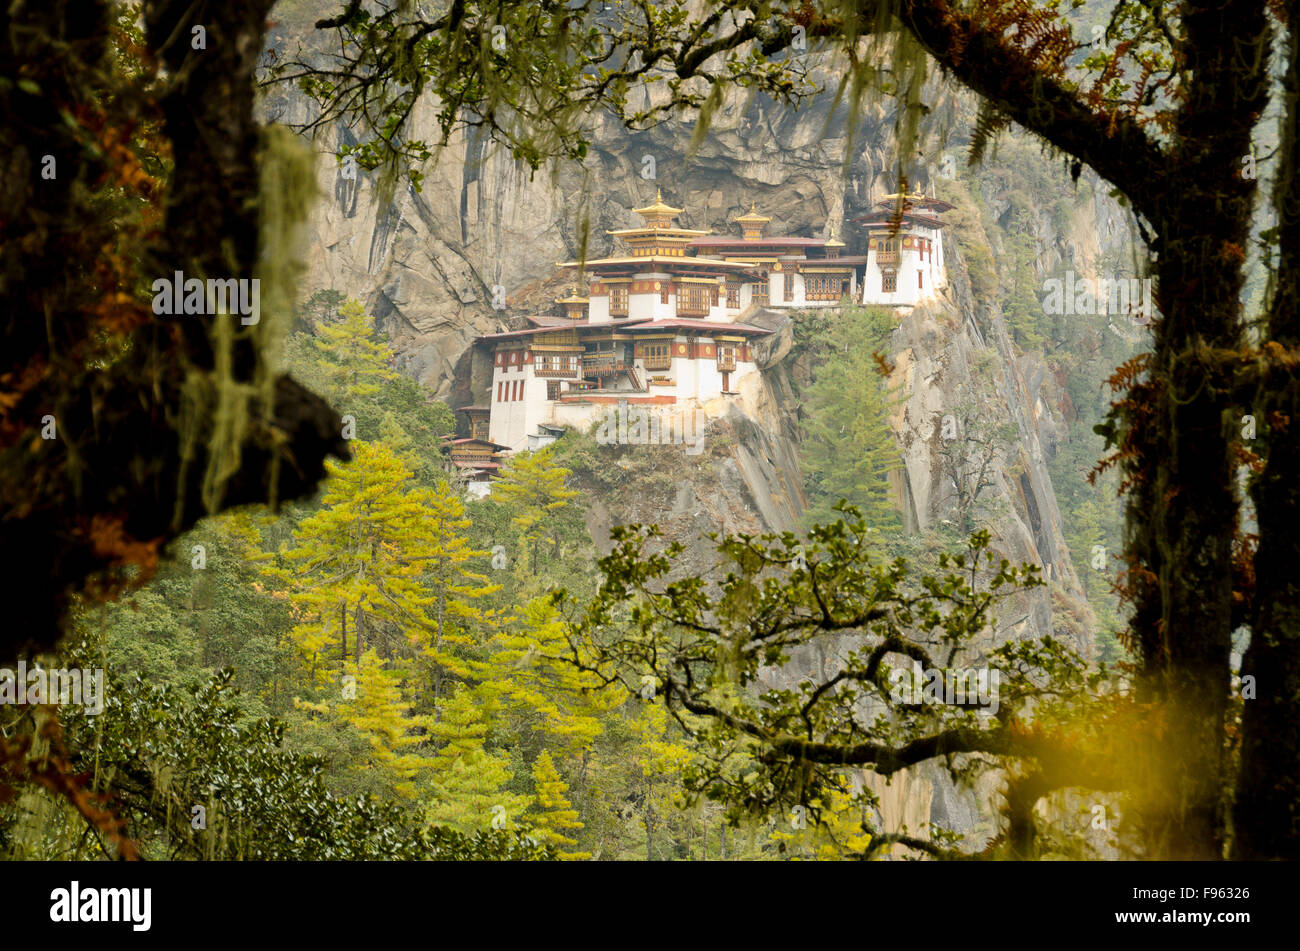 Le nid du tigre, le Bhoutan Monastère Banque D'Images